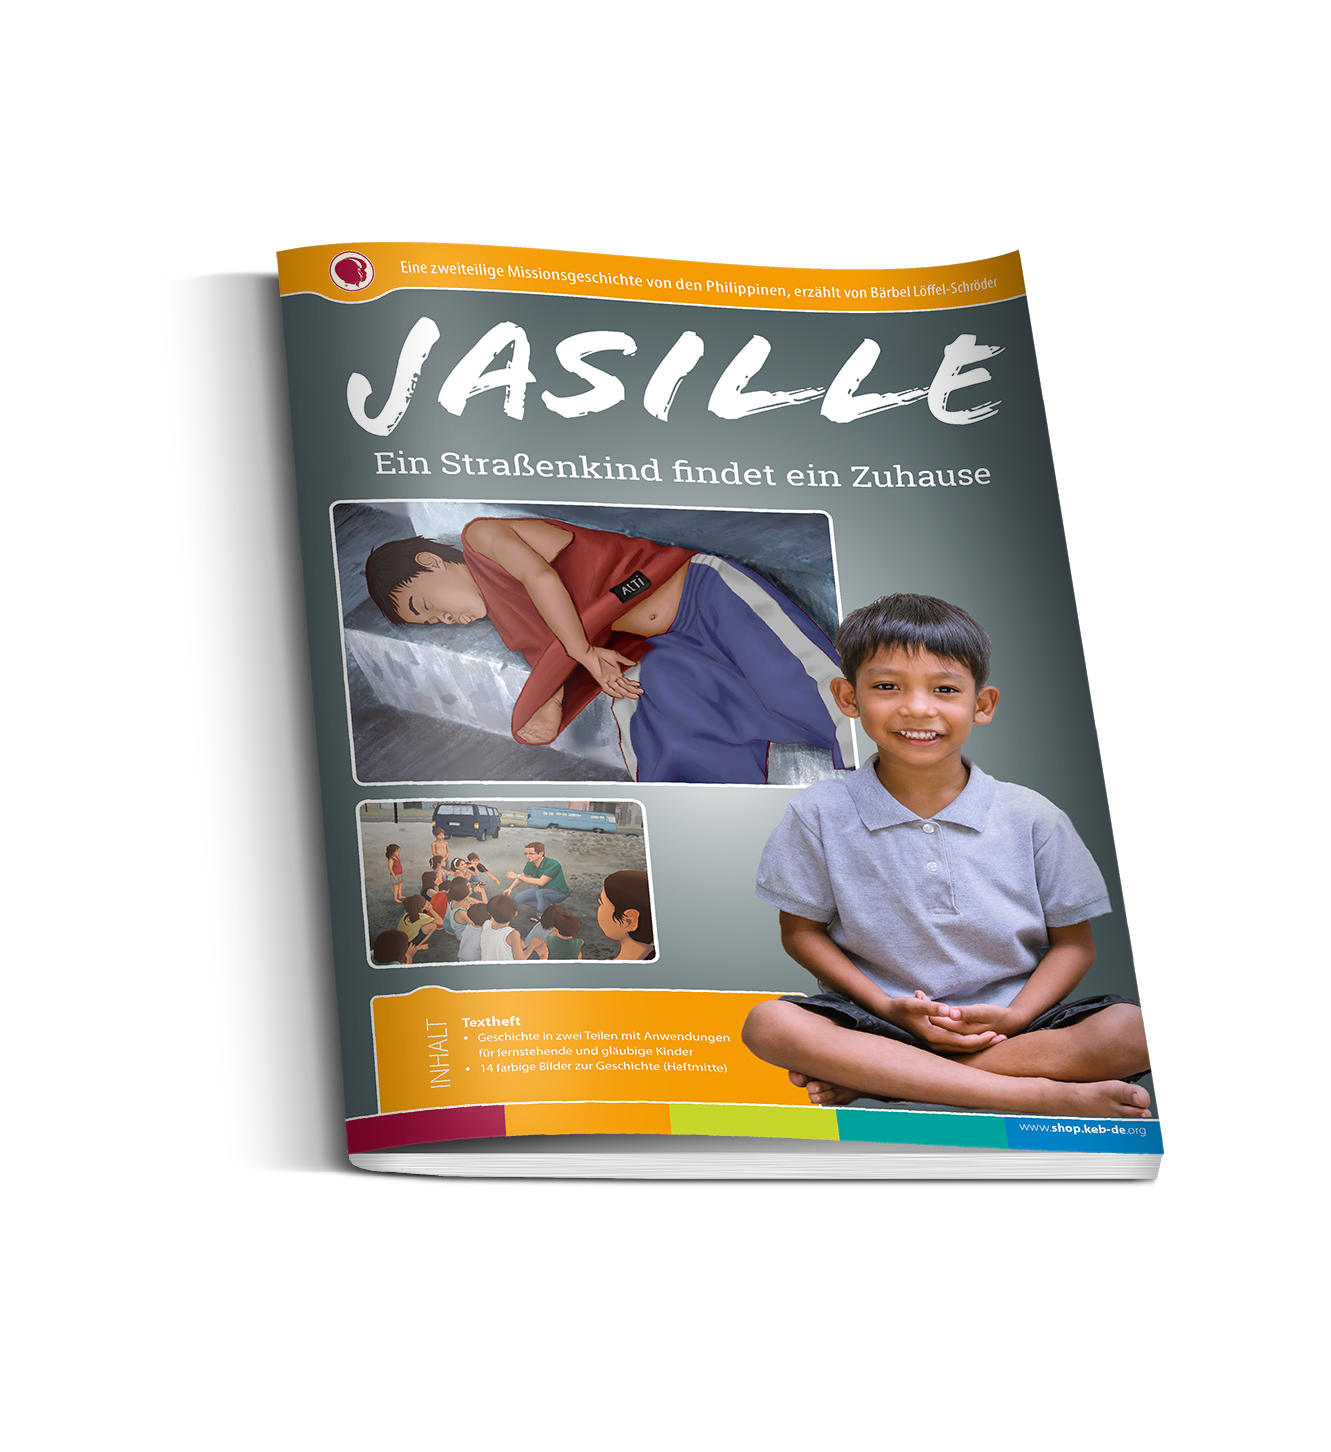 Jasille – Ein Straßenkind findet ein Zuhause